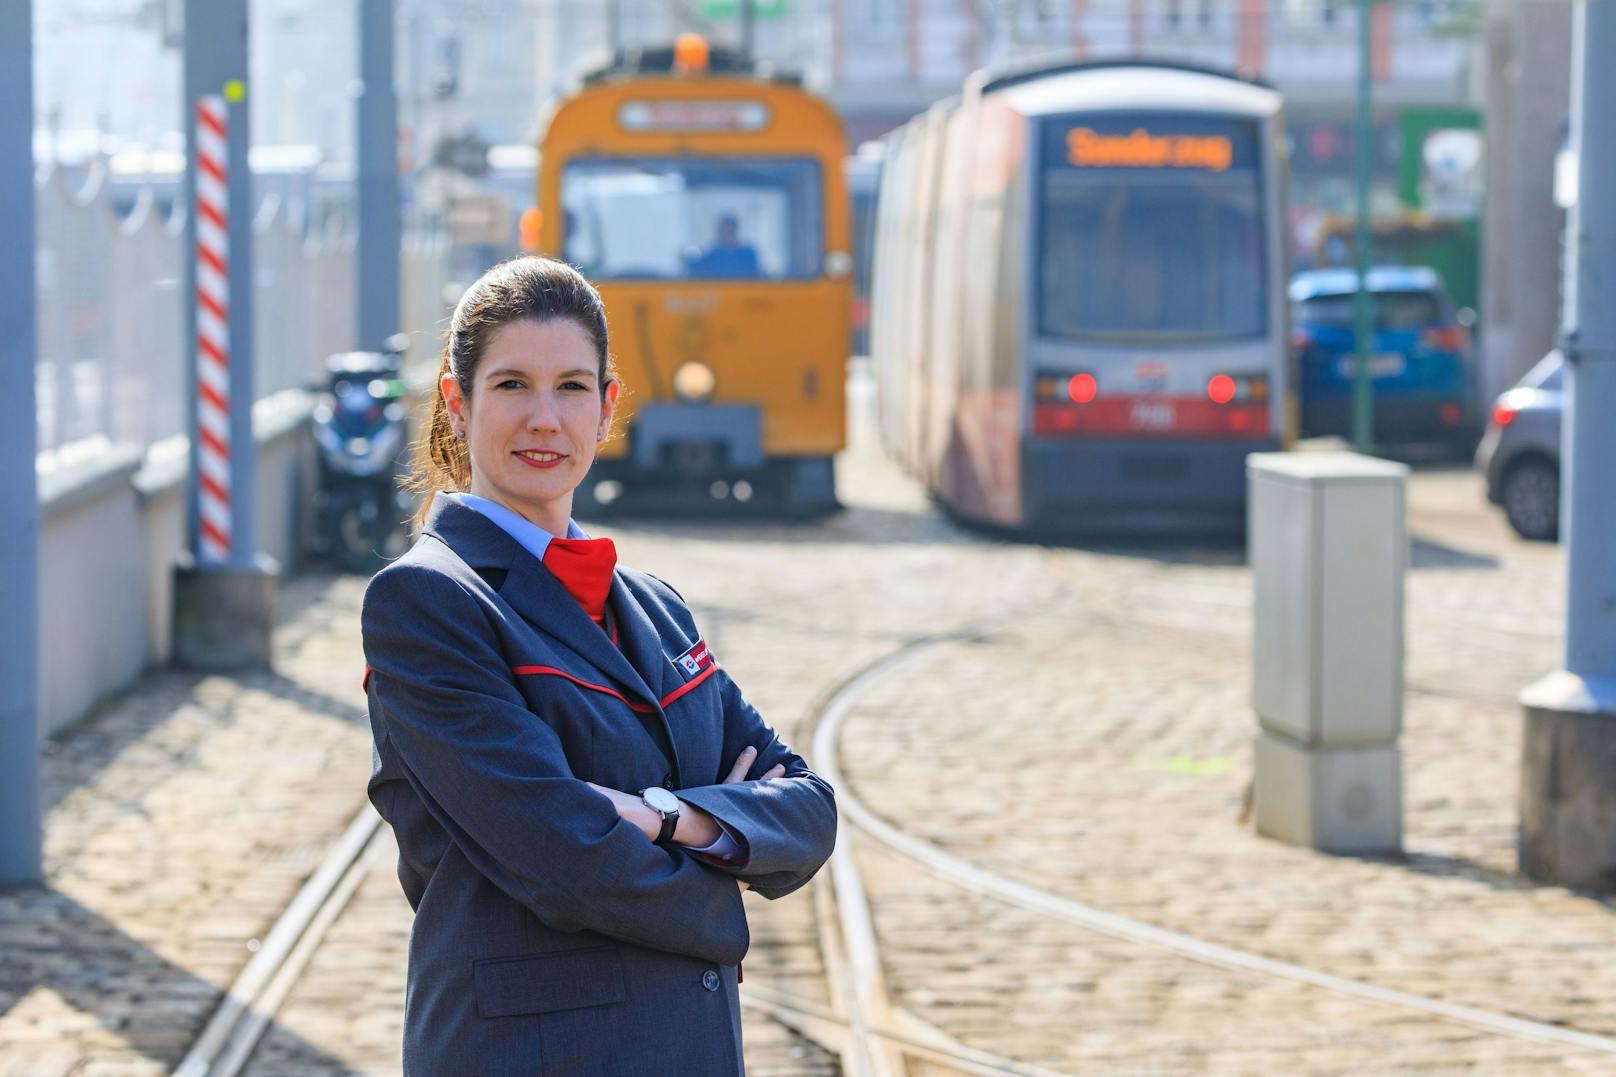 Elisabeth Waltjen ist verantwortlich für zehn Straßenbahn-Linien und 360 Mitarbeiter.